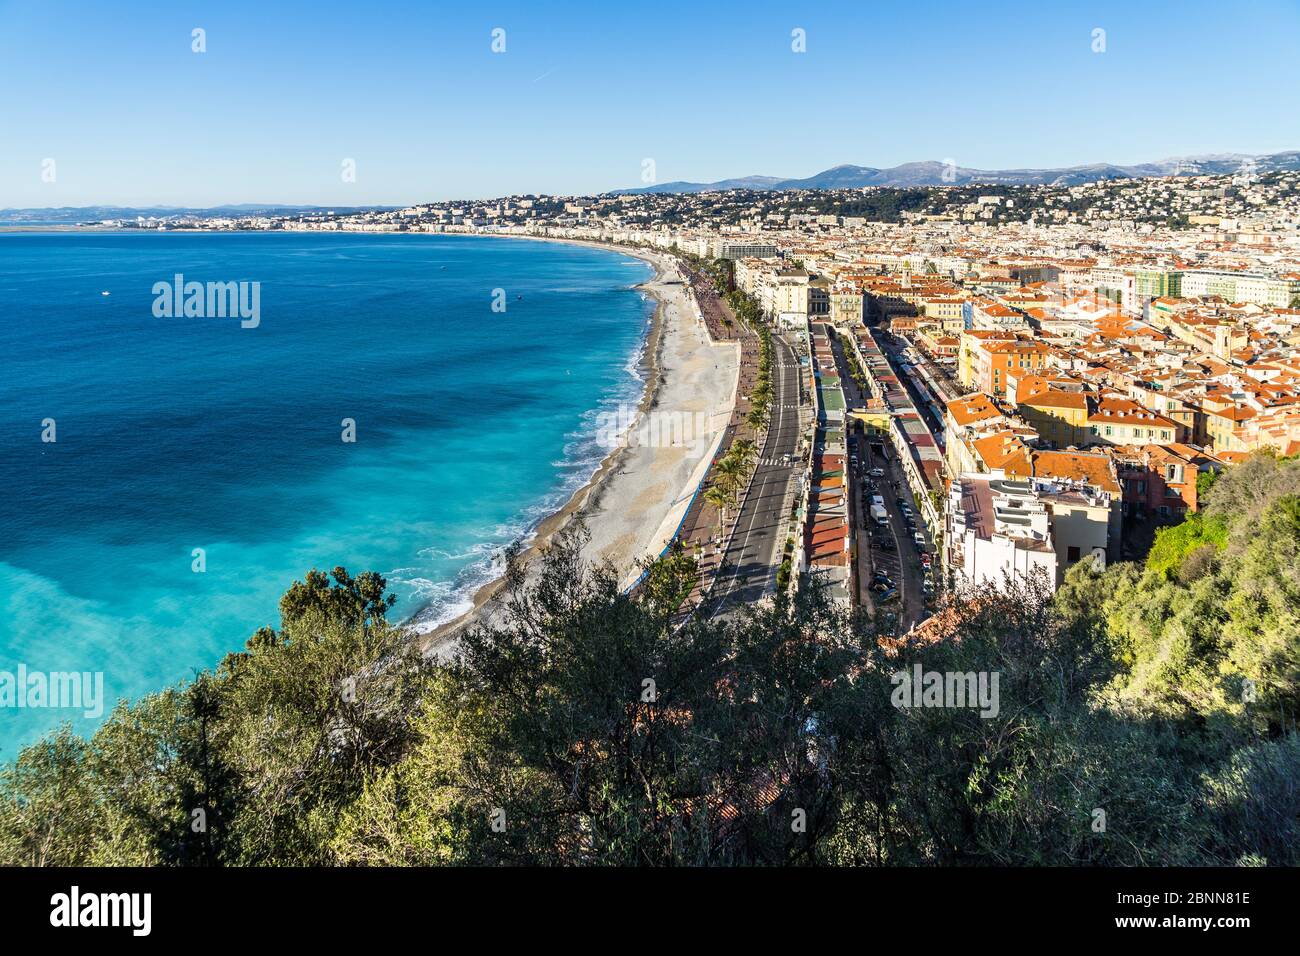 La magnifique Baie des Anges et la Promenade des Anglais à Nice, vue depuis la Colline du Château, France Banque D'Images